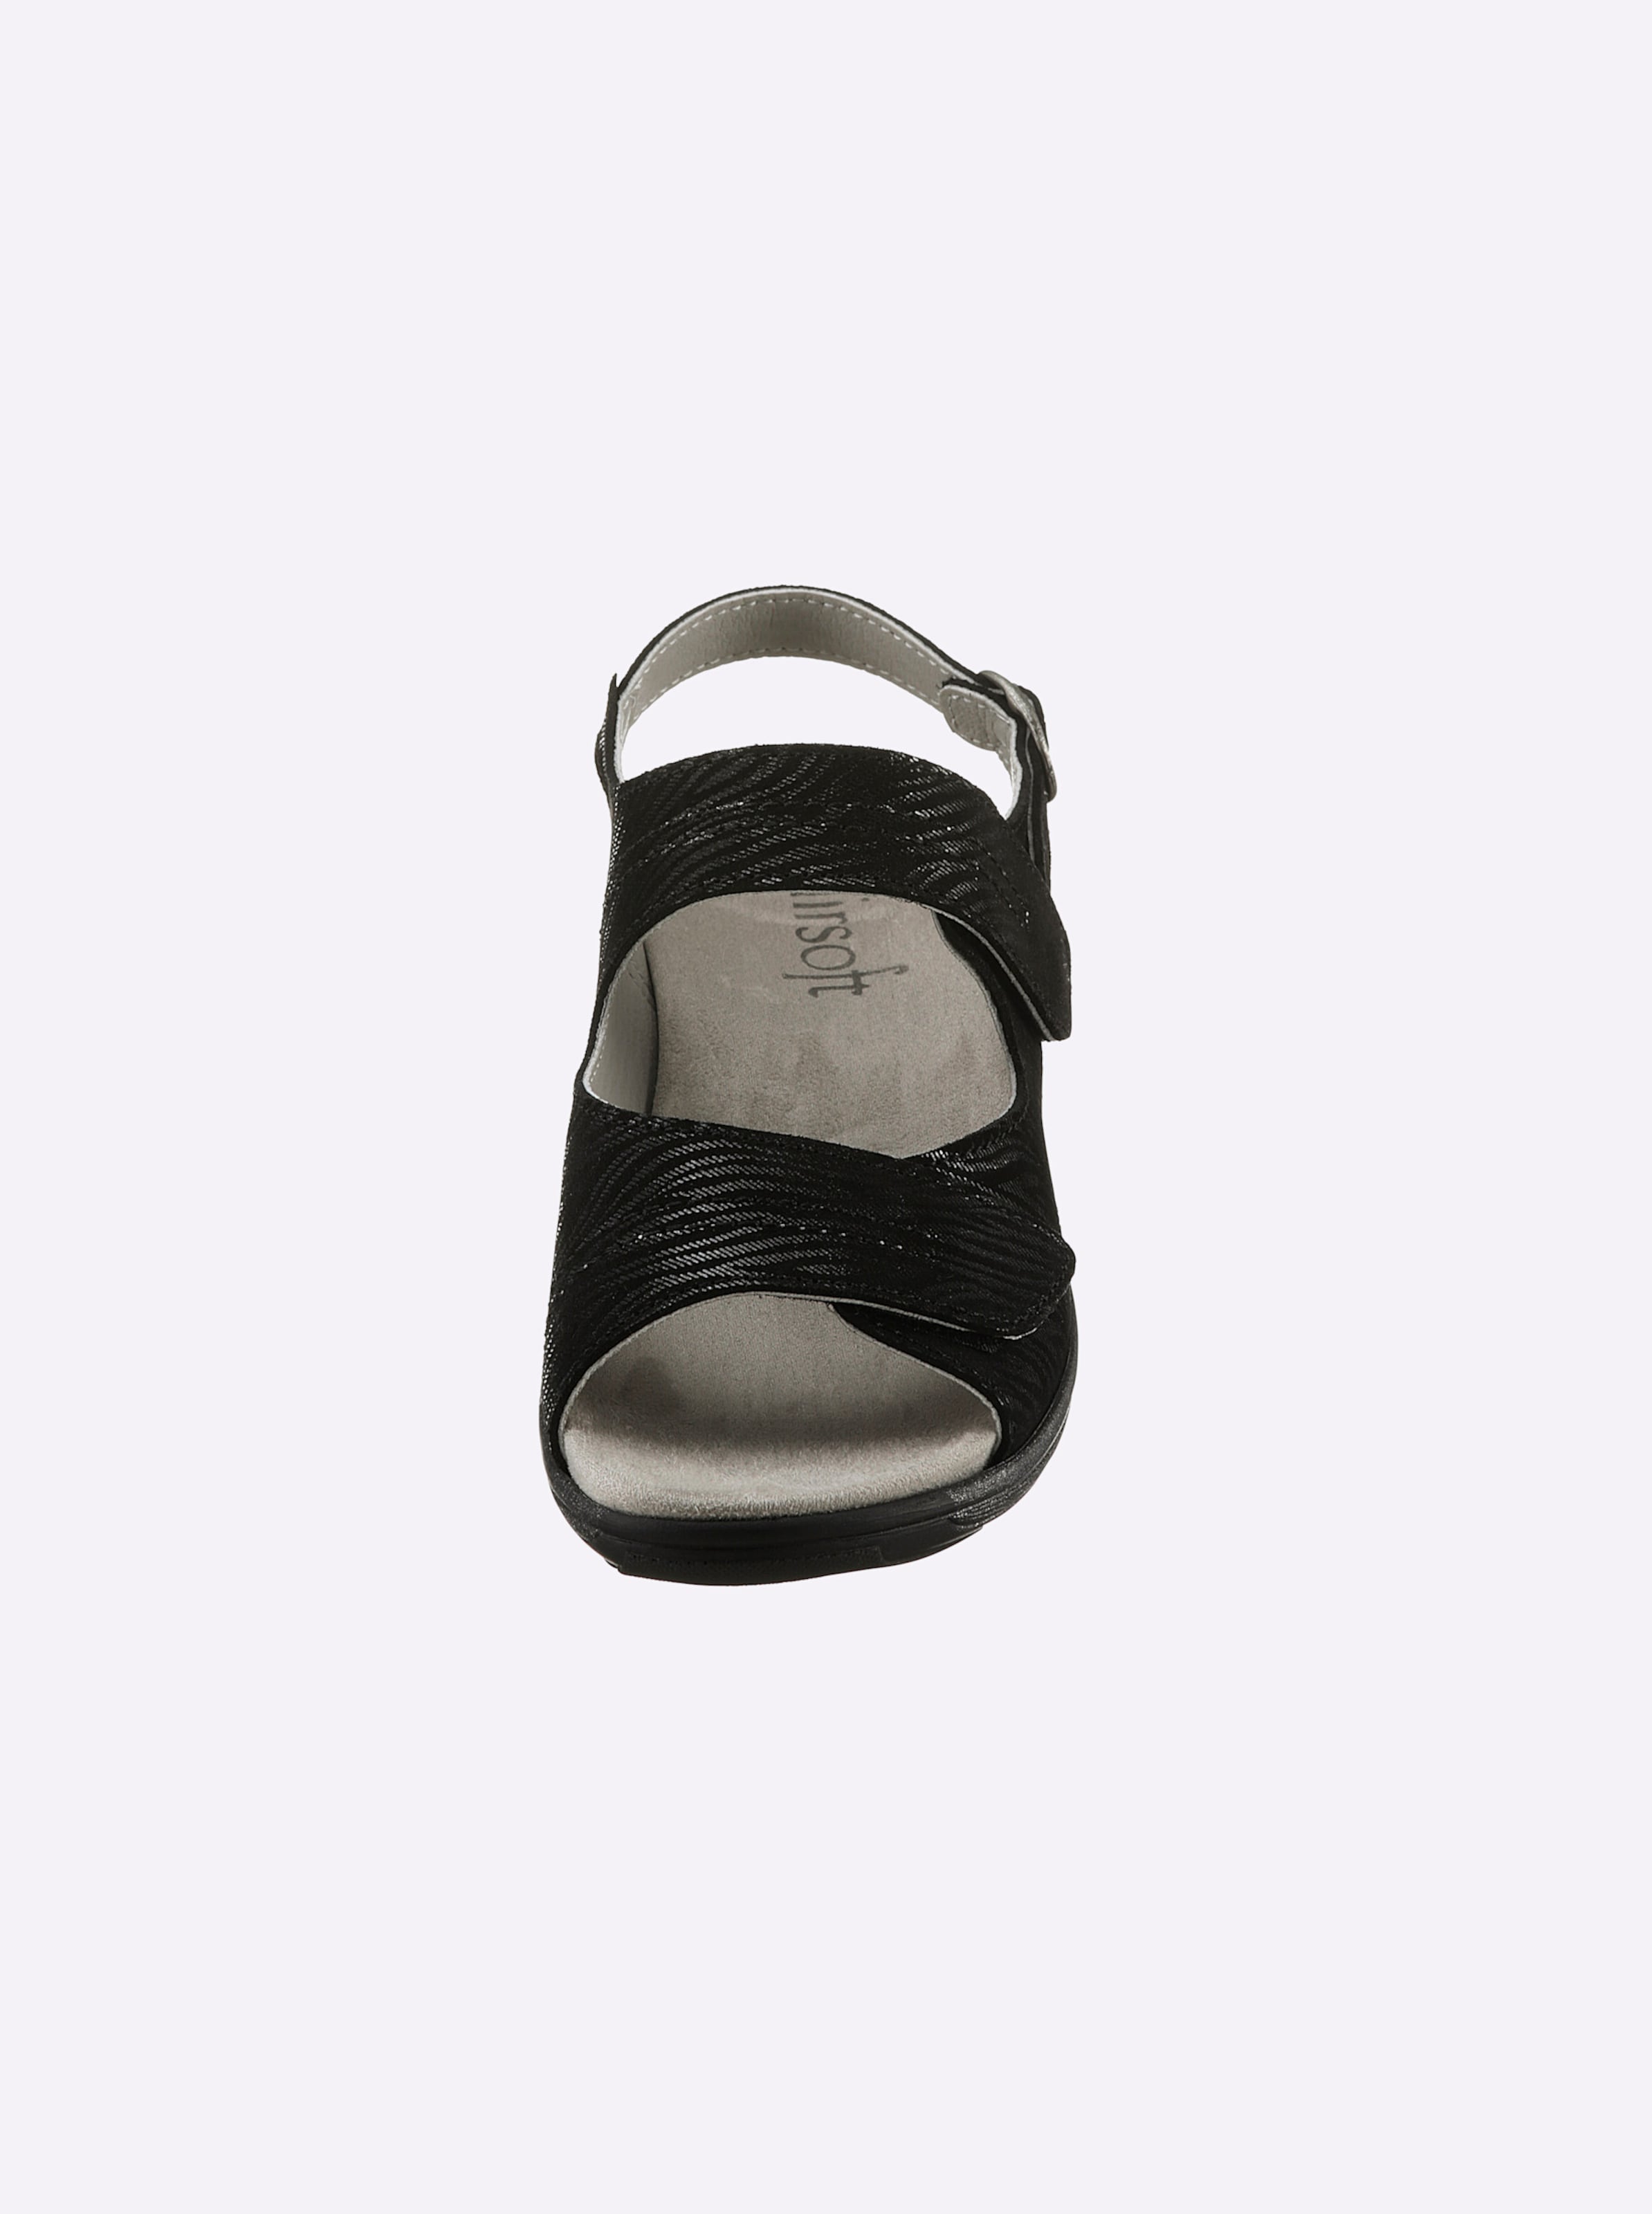 hochwertigem günstig Kaufen-Sandalette in schwarz von airsoft comfort+. Sandalette in schwarz von airsoft comfort+ <![CDATA[Ganz im Trend und auch noch super bequem! Sandalette von airsoft comfort+ mit geprägtem, edel schimmerndem Zebra-Muster auf hochwertigem Glattleder. Innen aus